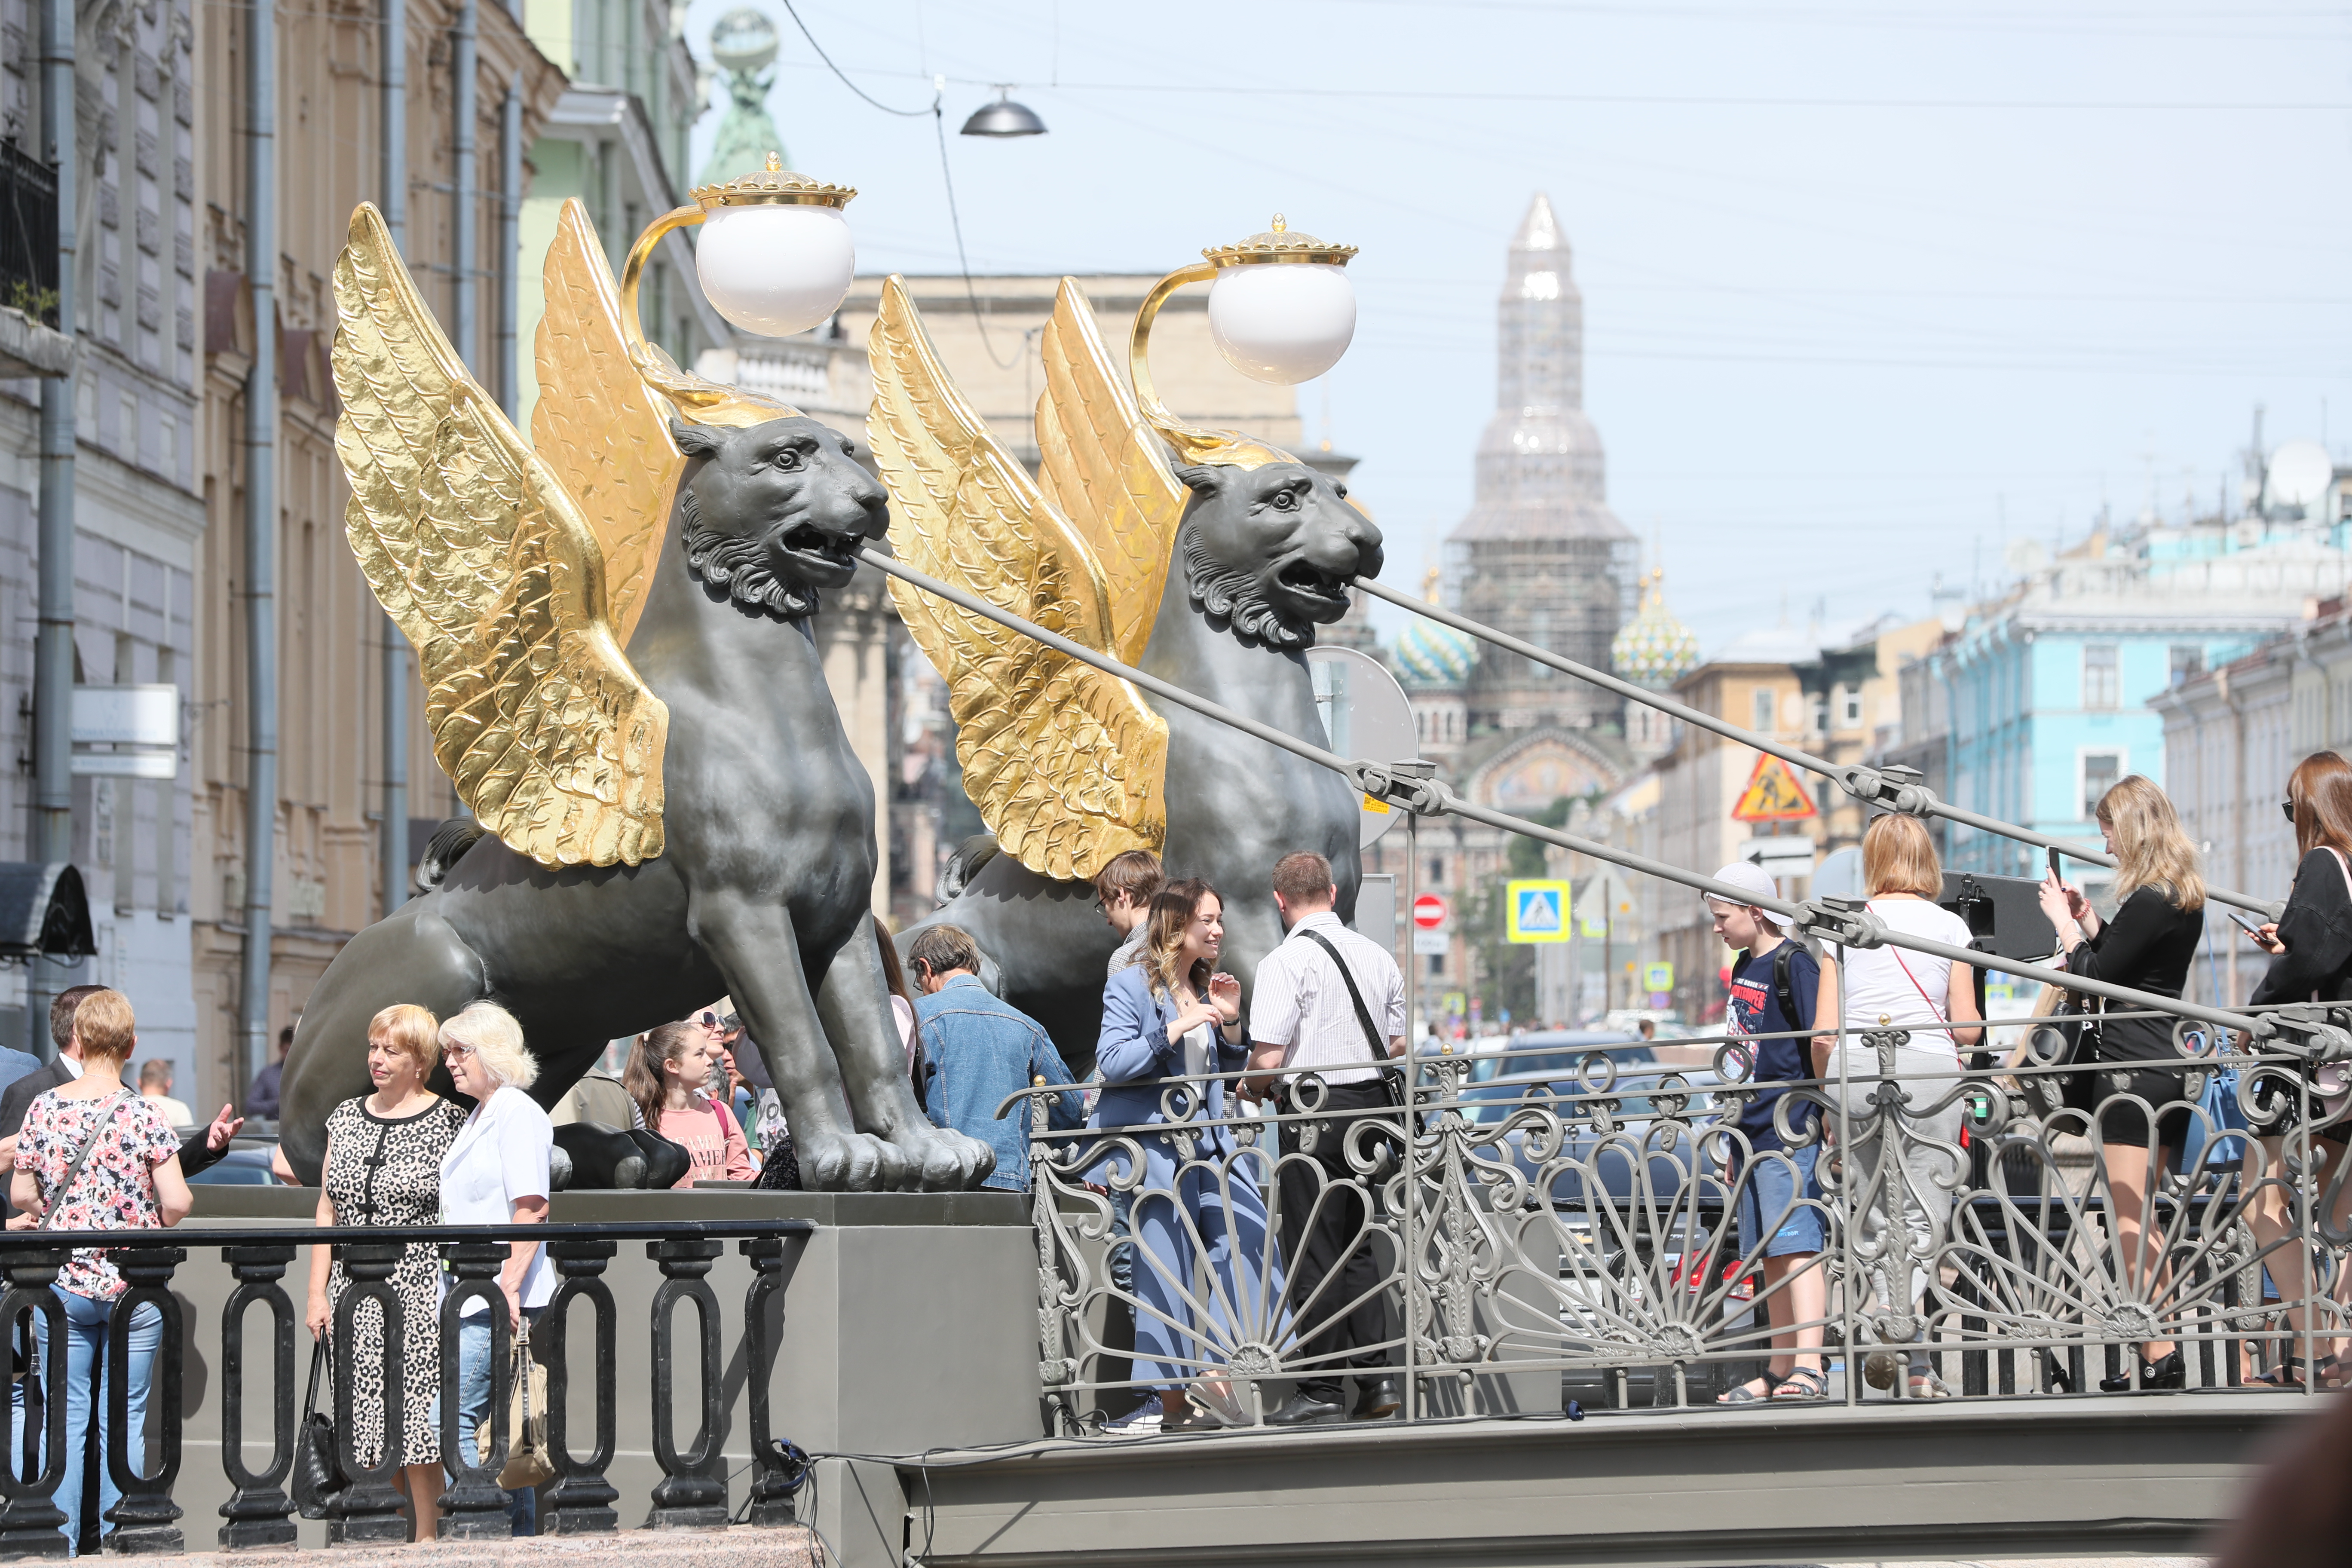 Банковский мостик в Санкт-Петербурге с грифонами